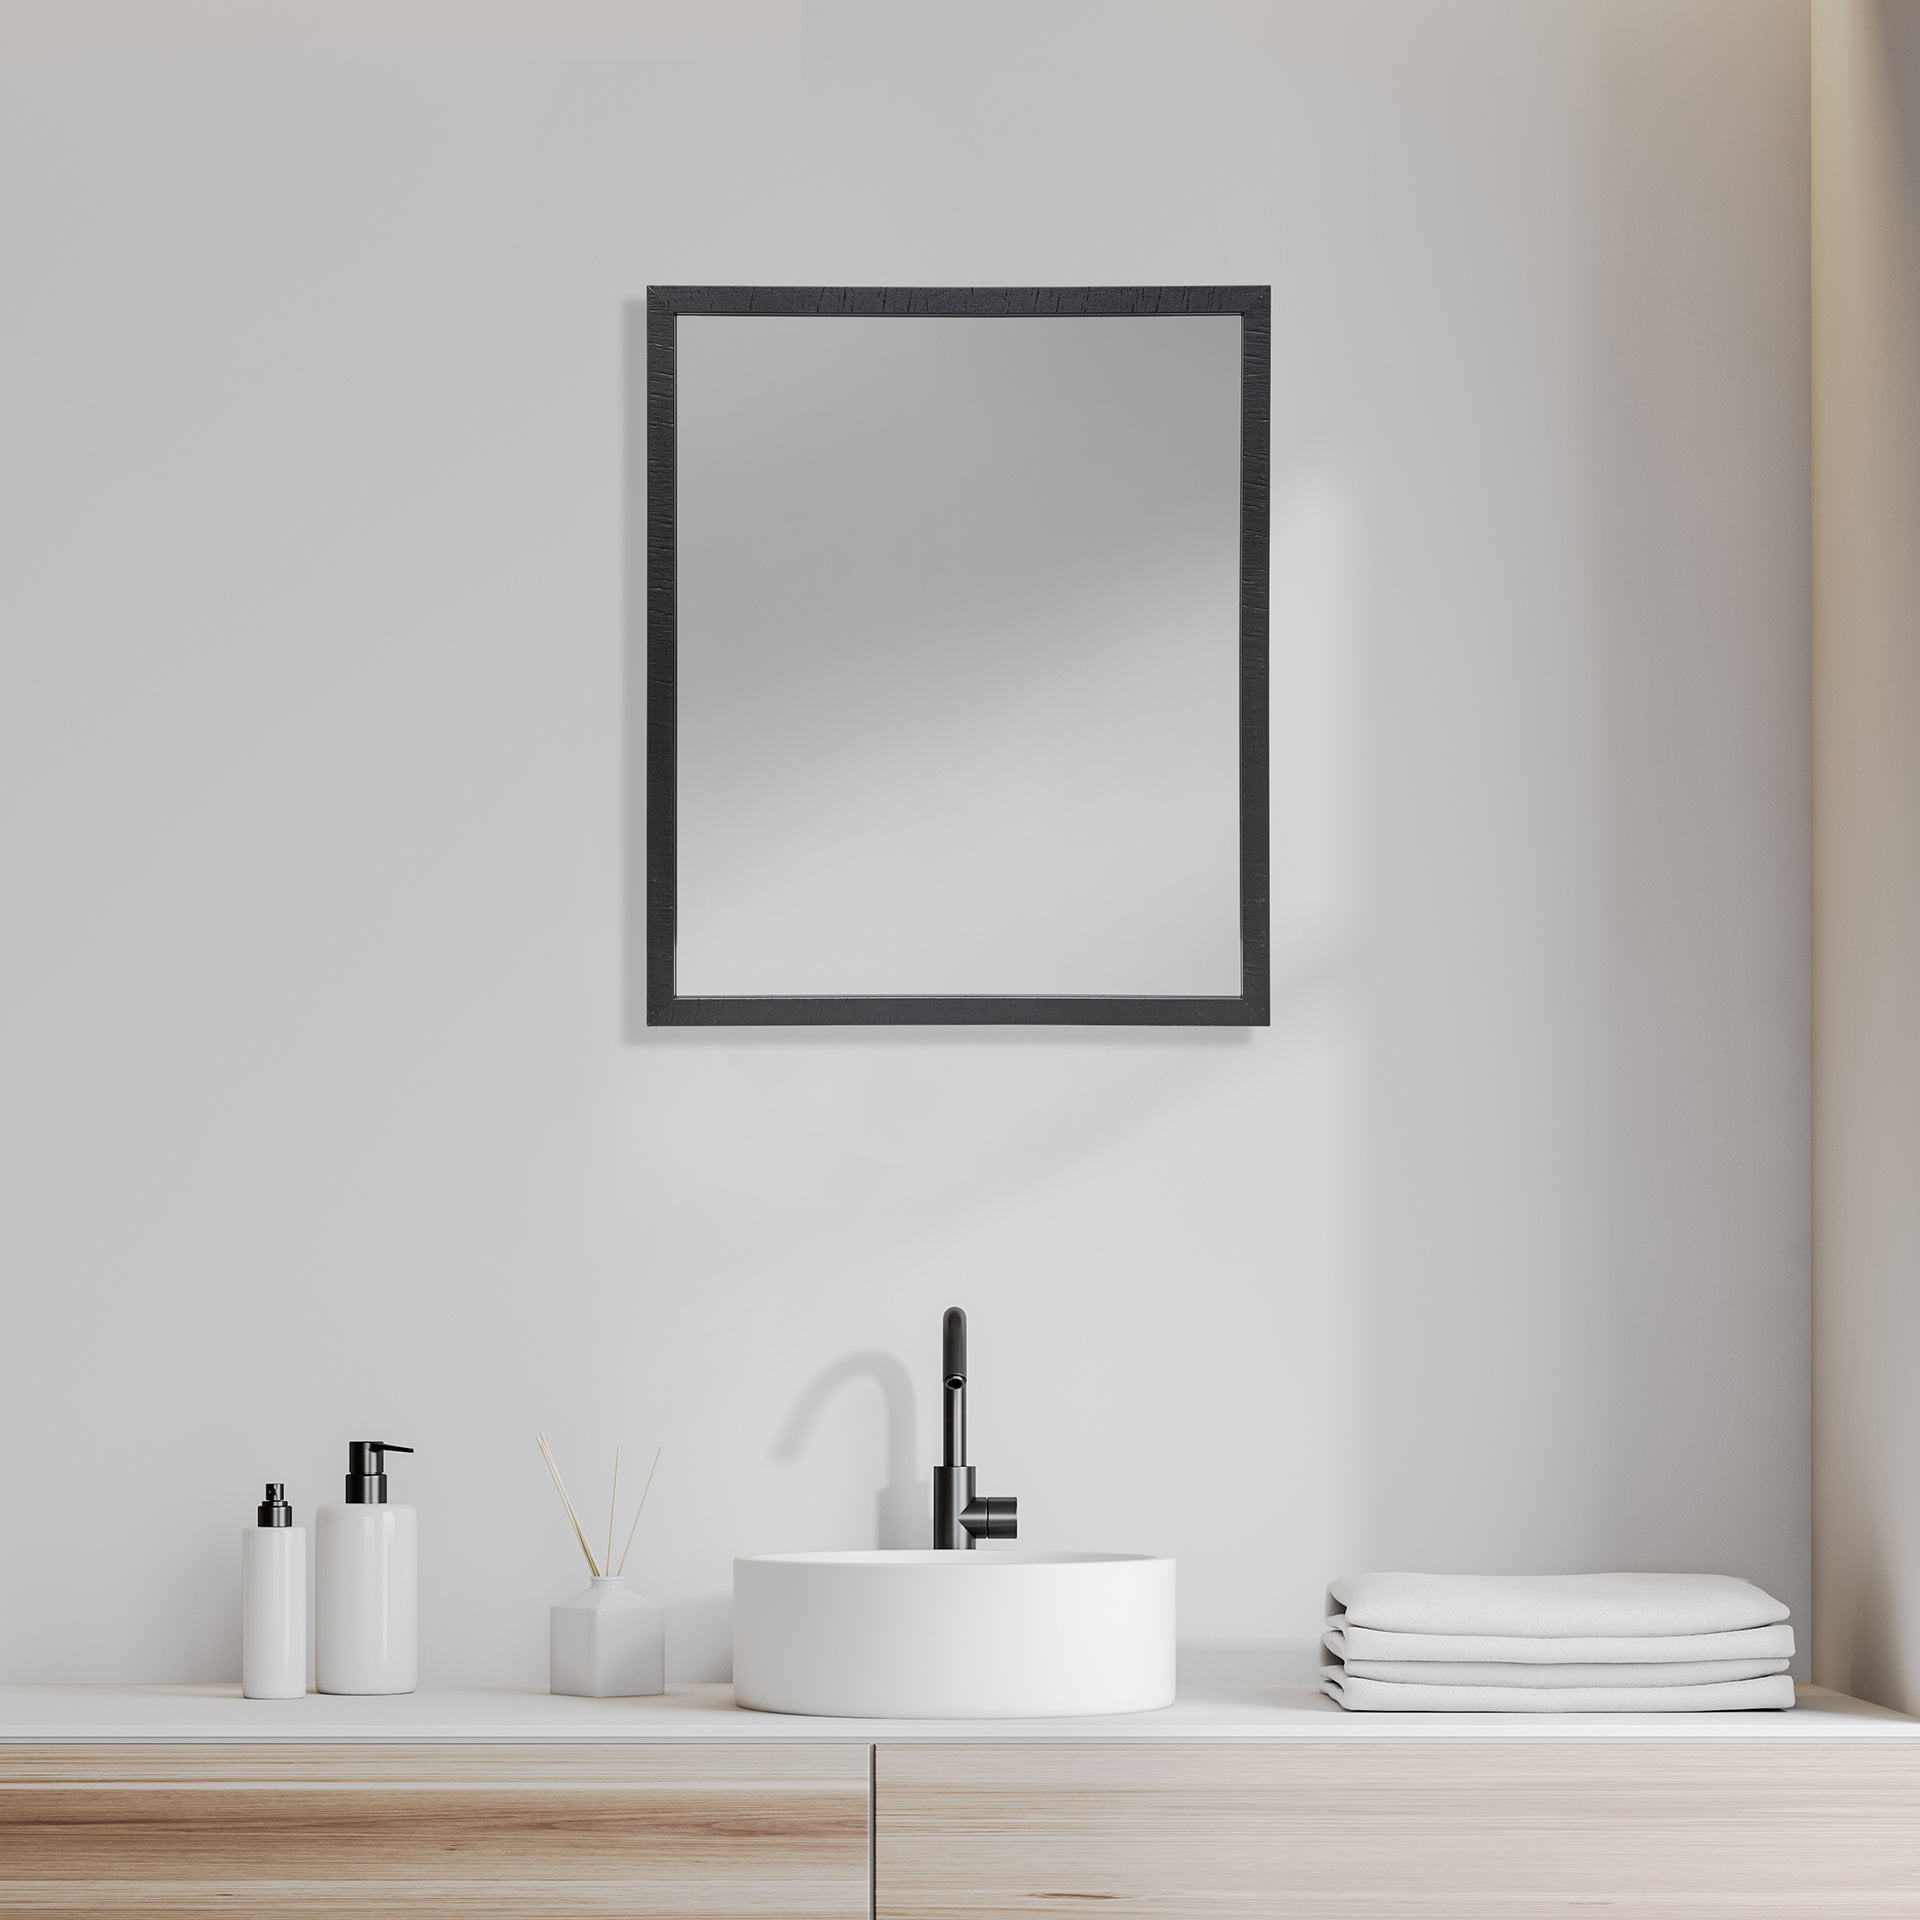 Mercana Espresso Faux Wood Frame, Espresso Color Bathroom Mirror